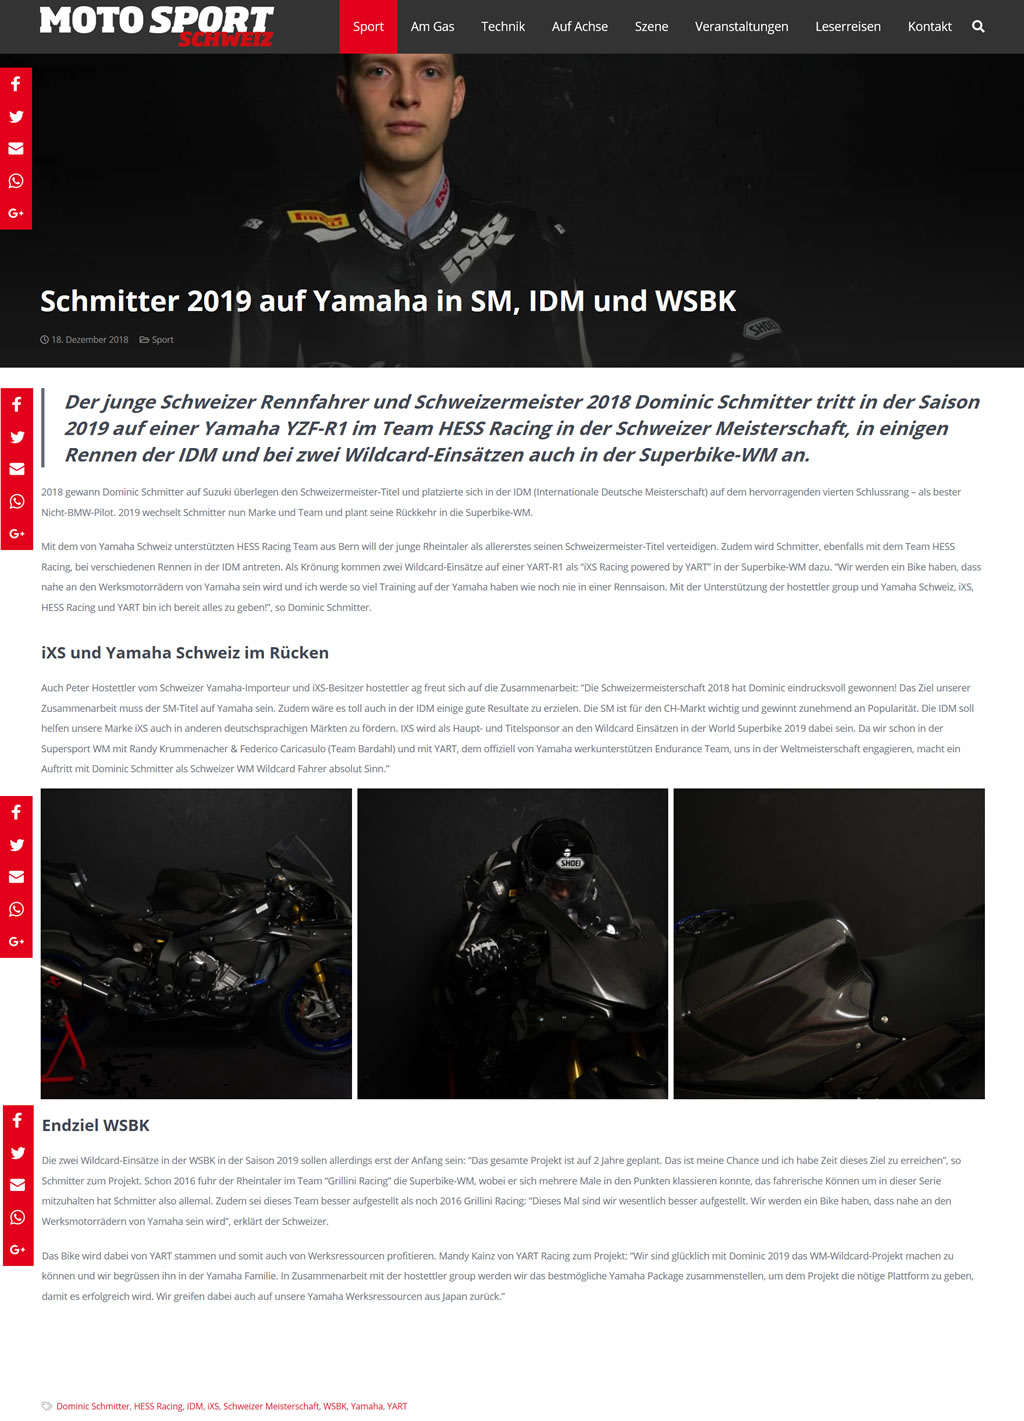 schmitter-2019-auf-yamaha-in-sm-idm-und-wsbk.jpg